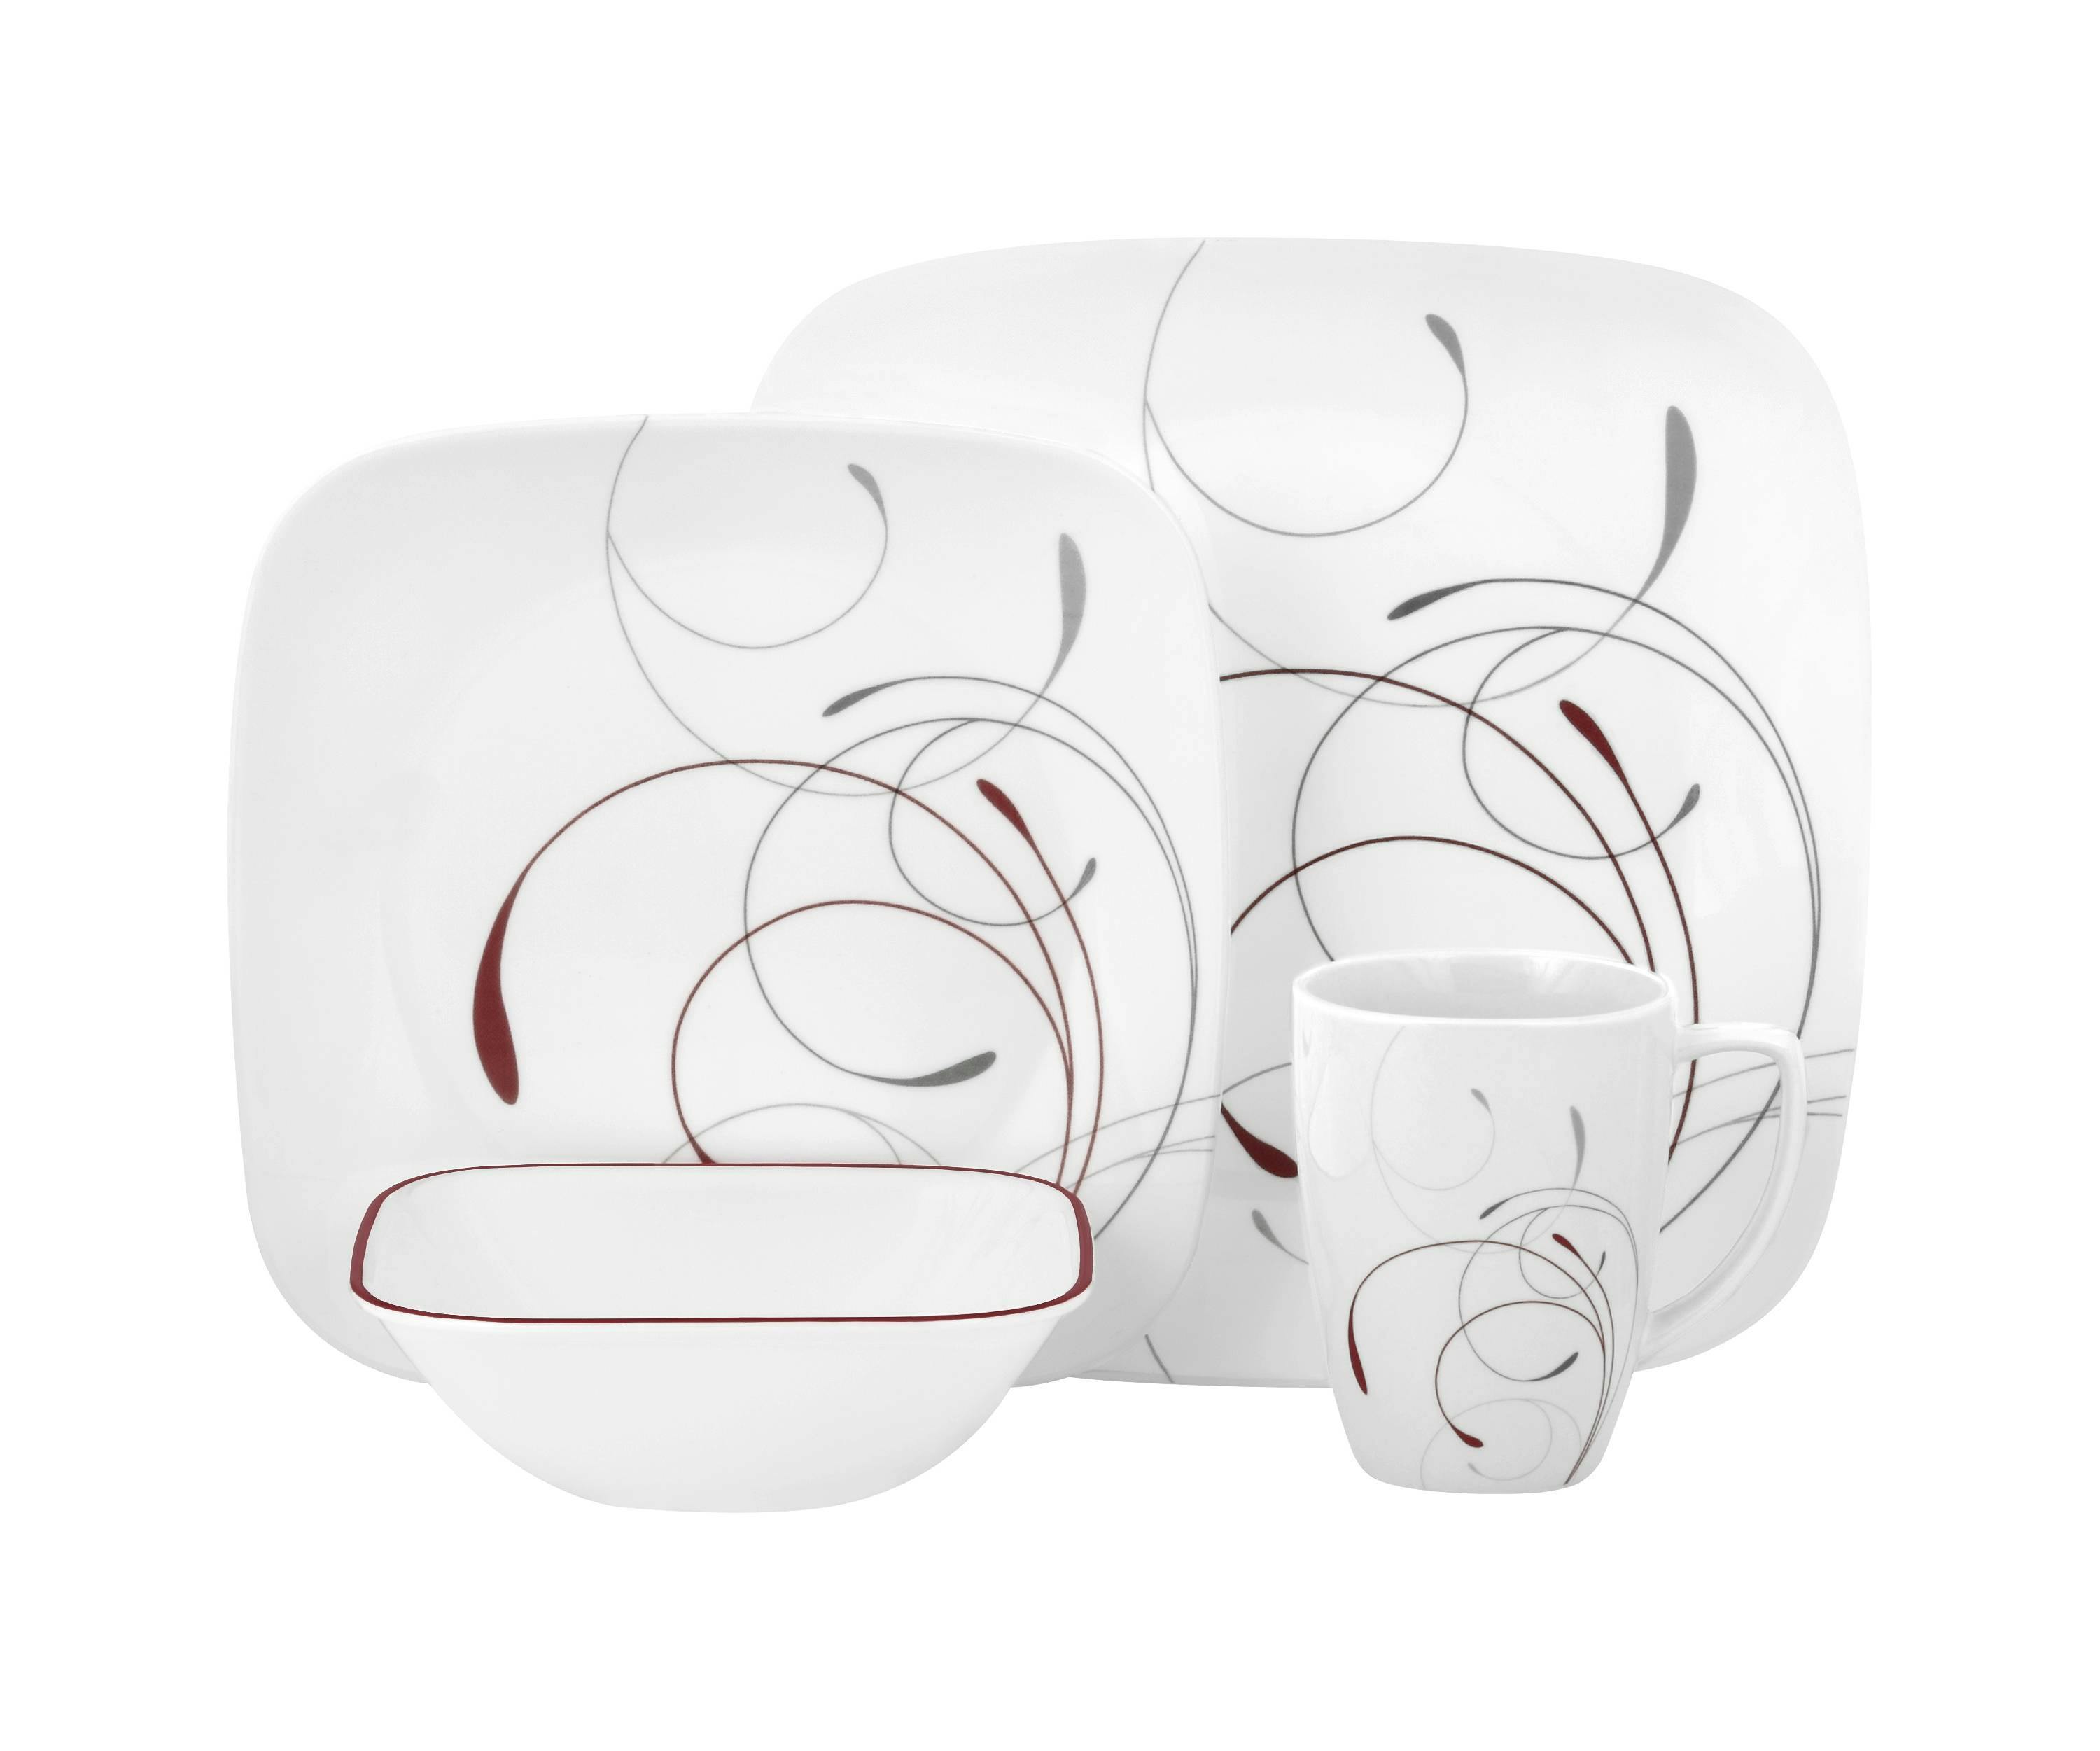 Corelle 16-Piece Dinnerware Set, Only $35.52 at Target.com (Reg. $74.99